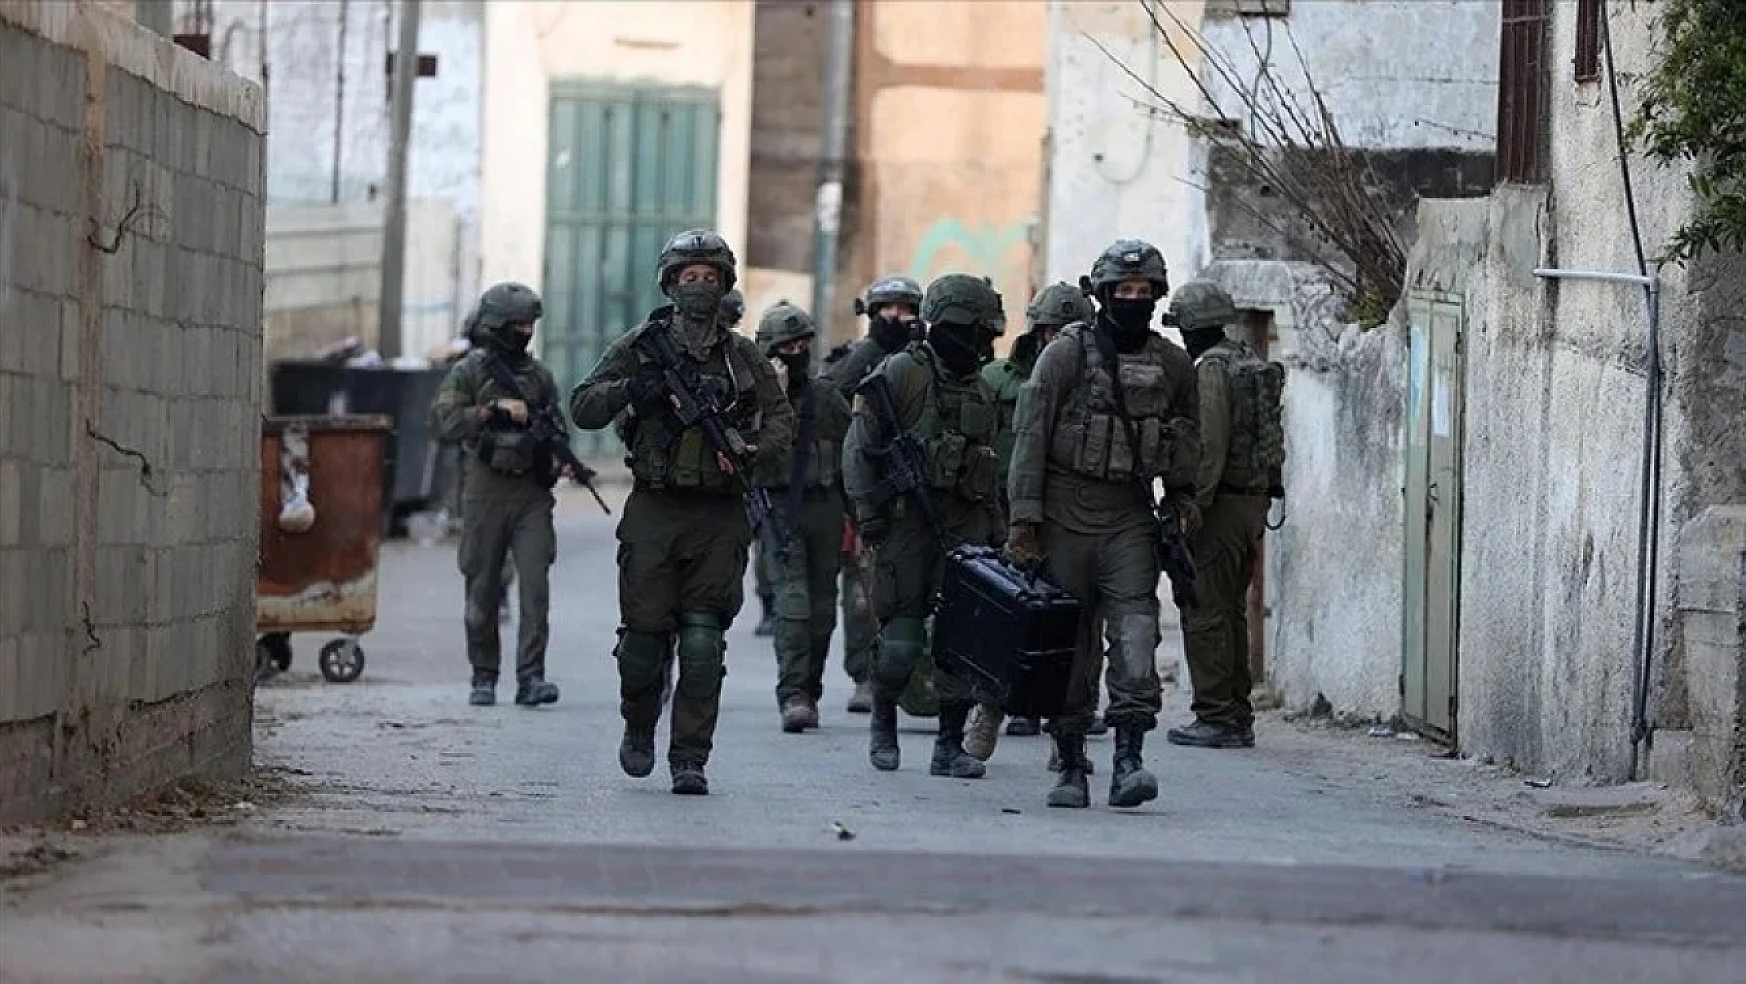 İsrail güçleri yine durmuyor. 4 Filistinliyi yaraladı, 13 kişiyi gözaltına aldı